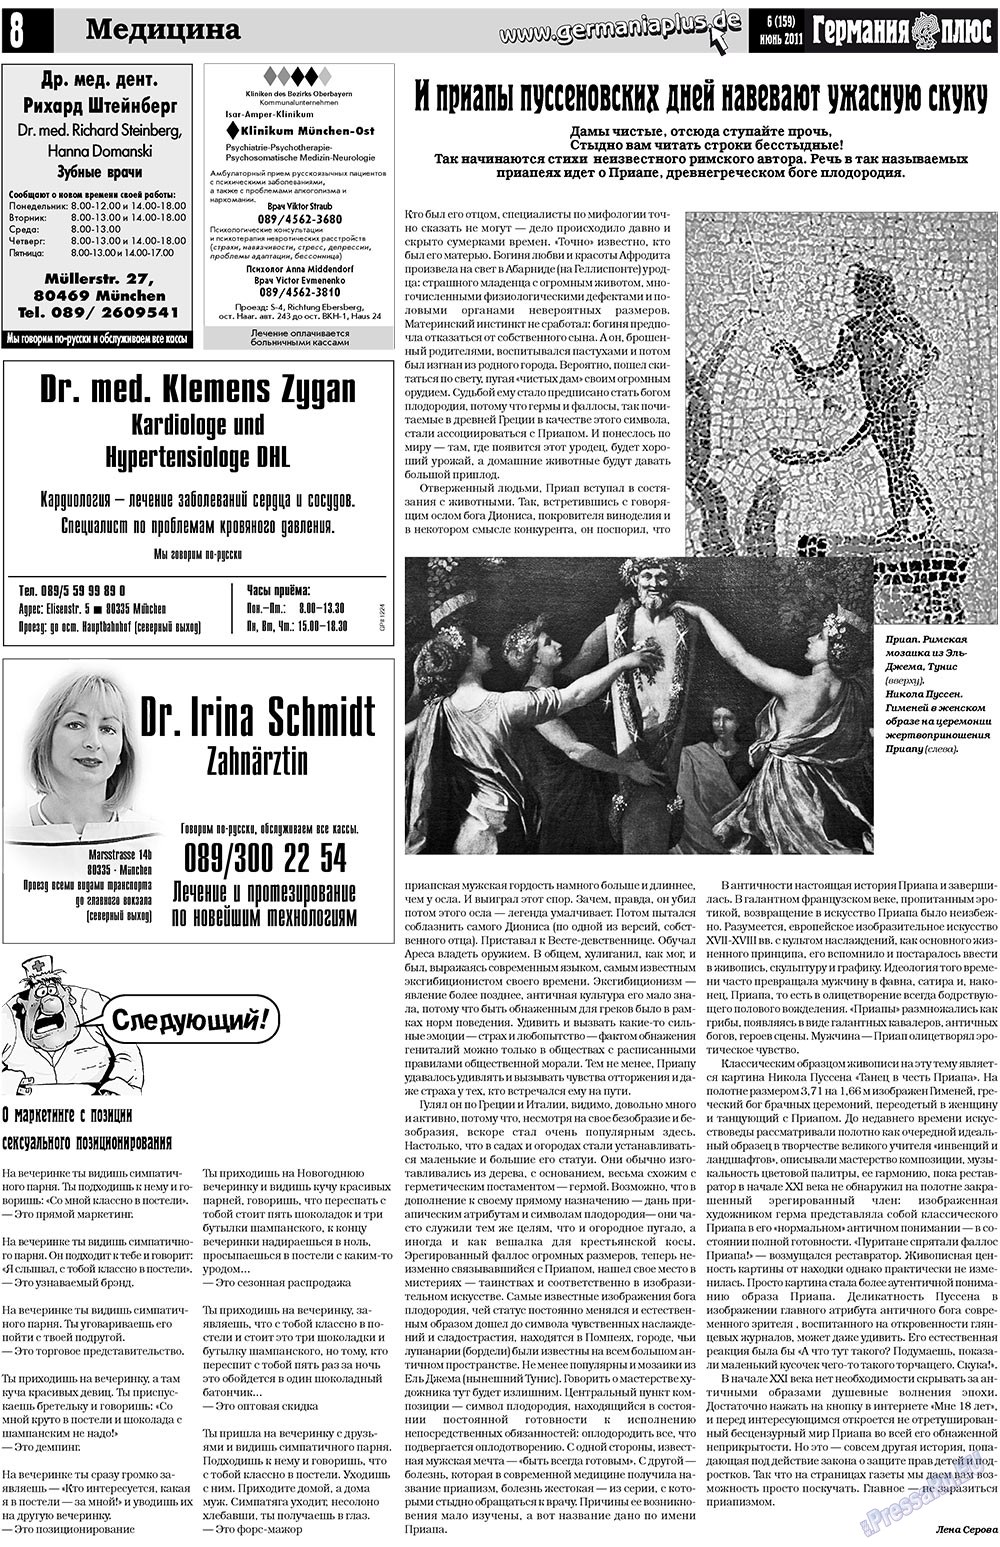 Германия плюс (газета). 2011 год, номер 6, стр. 8